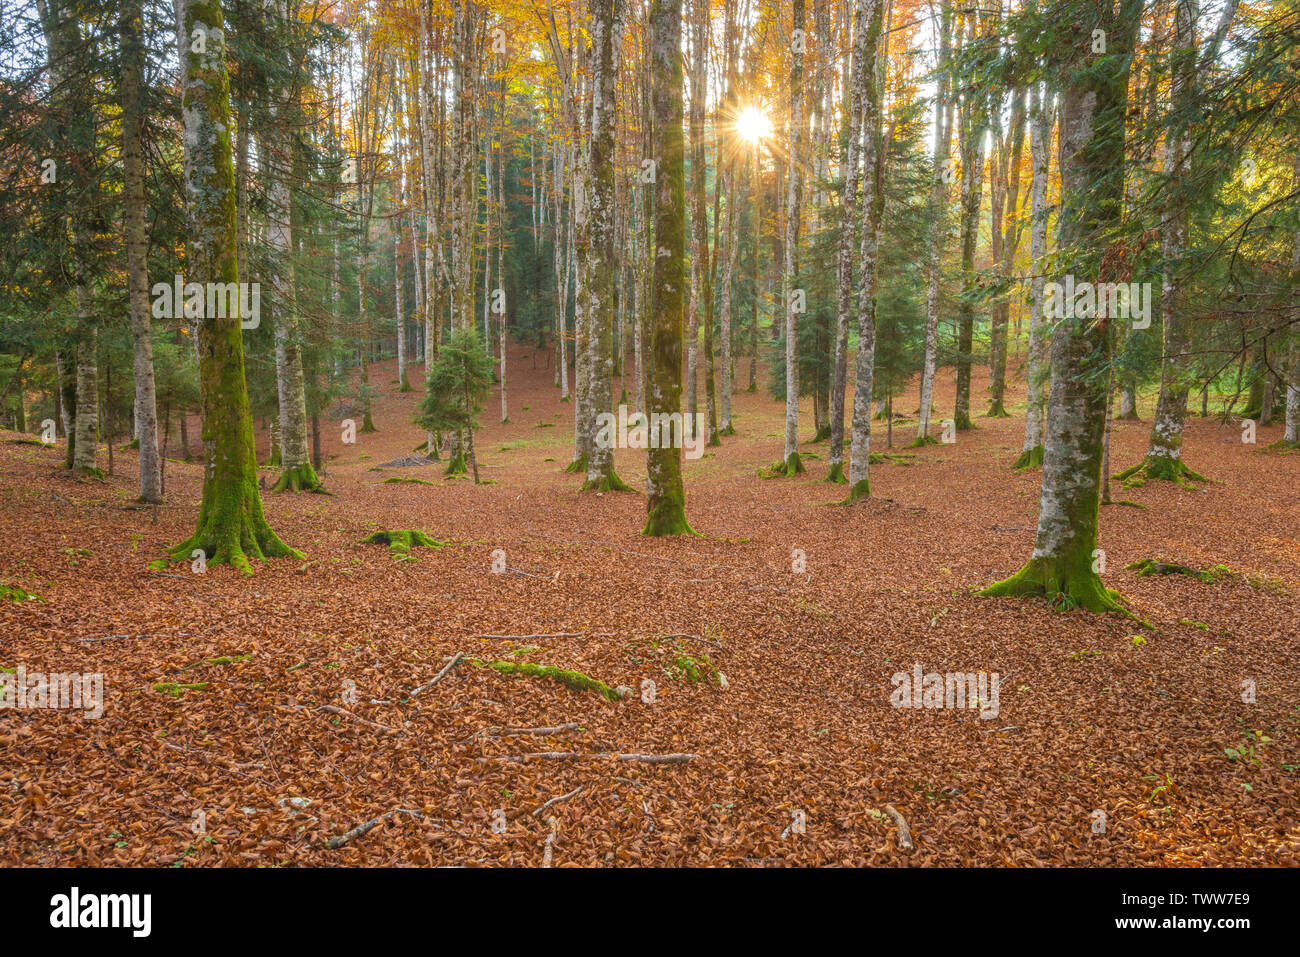 Sonne, die durch die Bäume in einem Buchenwald in Cansiglio, Italien. Oktober Blattwerk, Blätter, Teppich, Moosigen weiße Rinde Bäume. Baum Schatten. Stockfoto